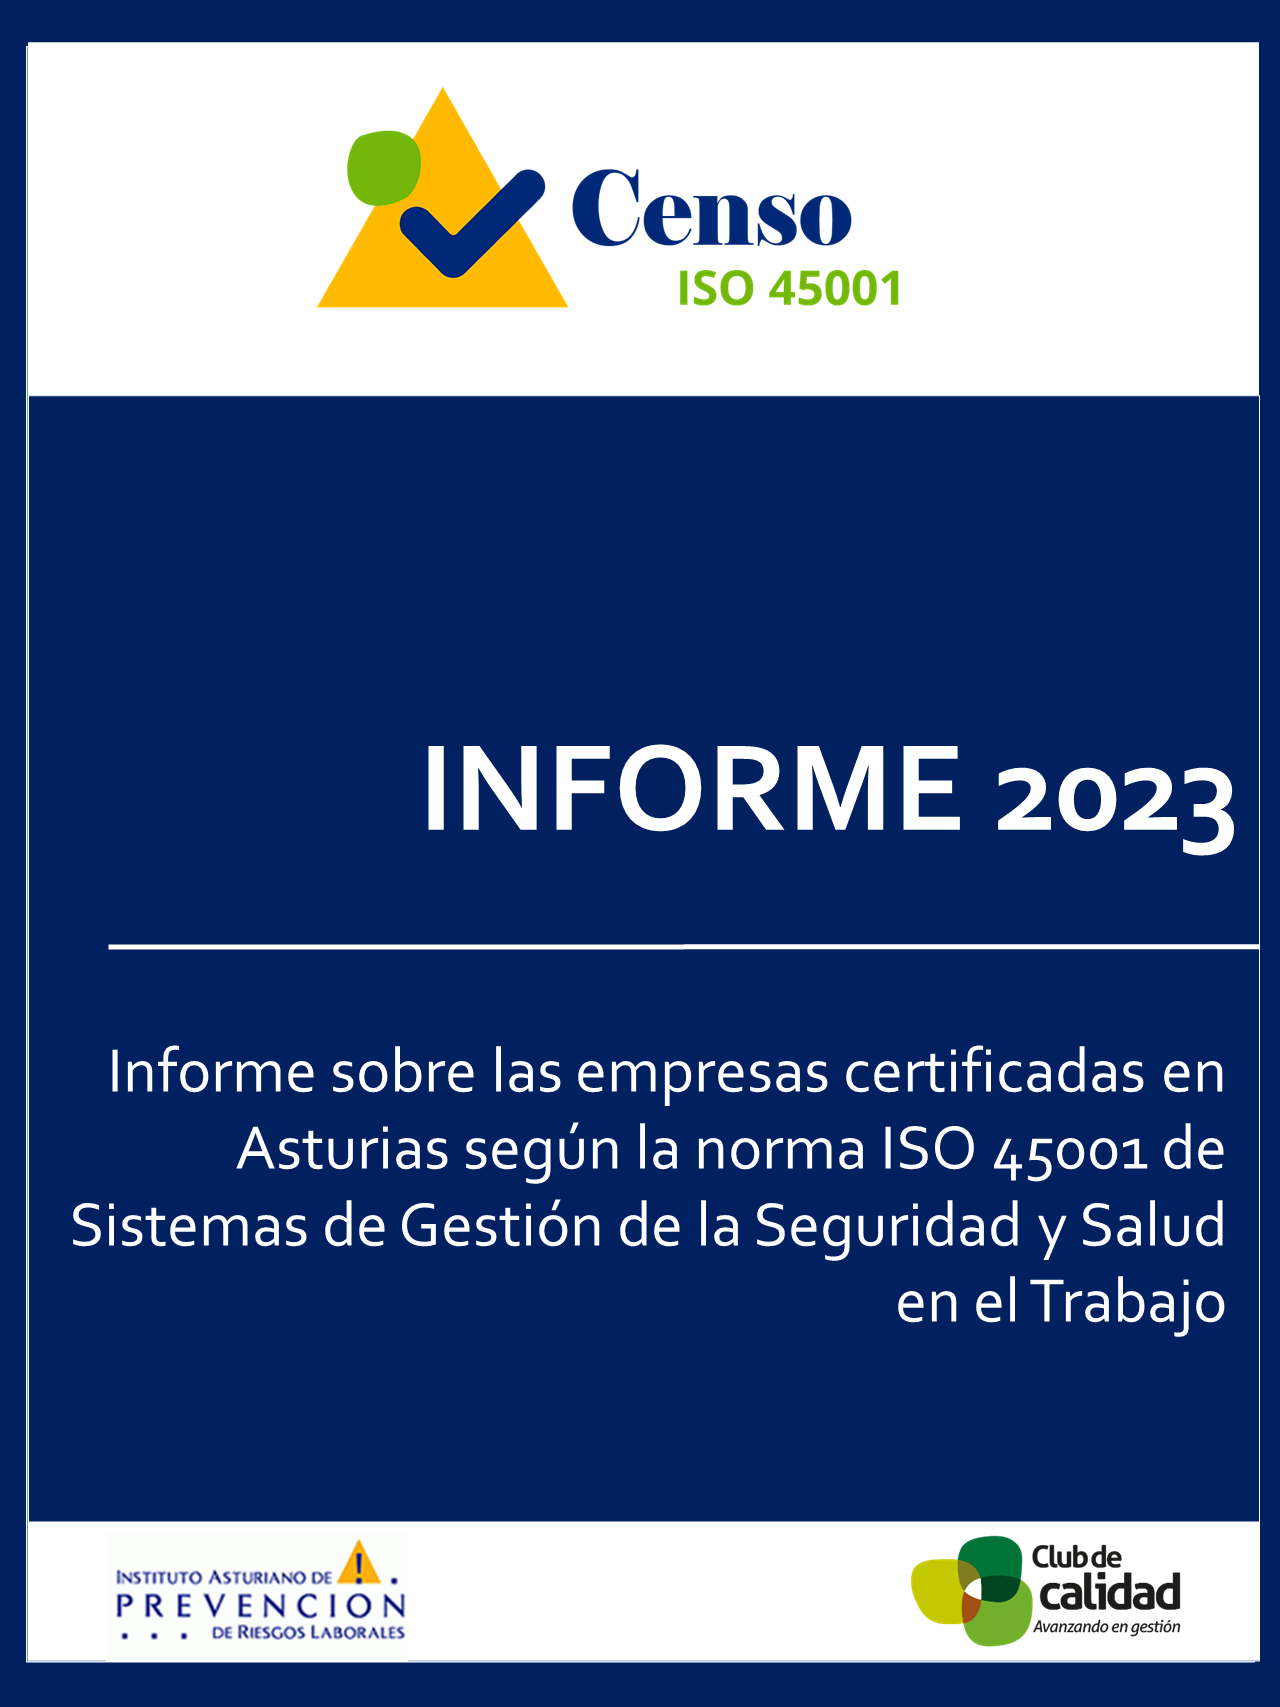 Informe 2023 Censo de Empresas Certificadas en ISO 45001